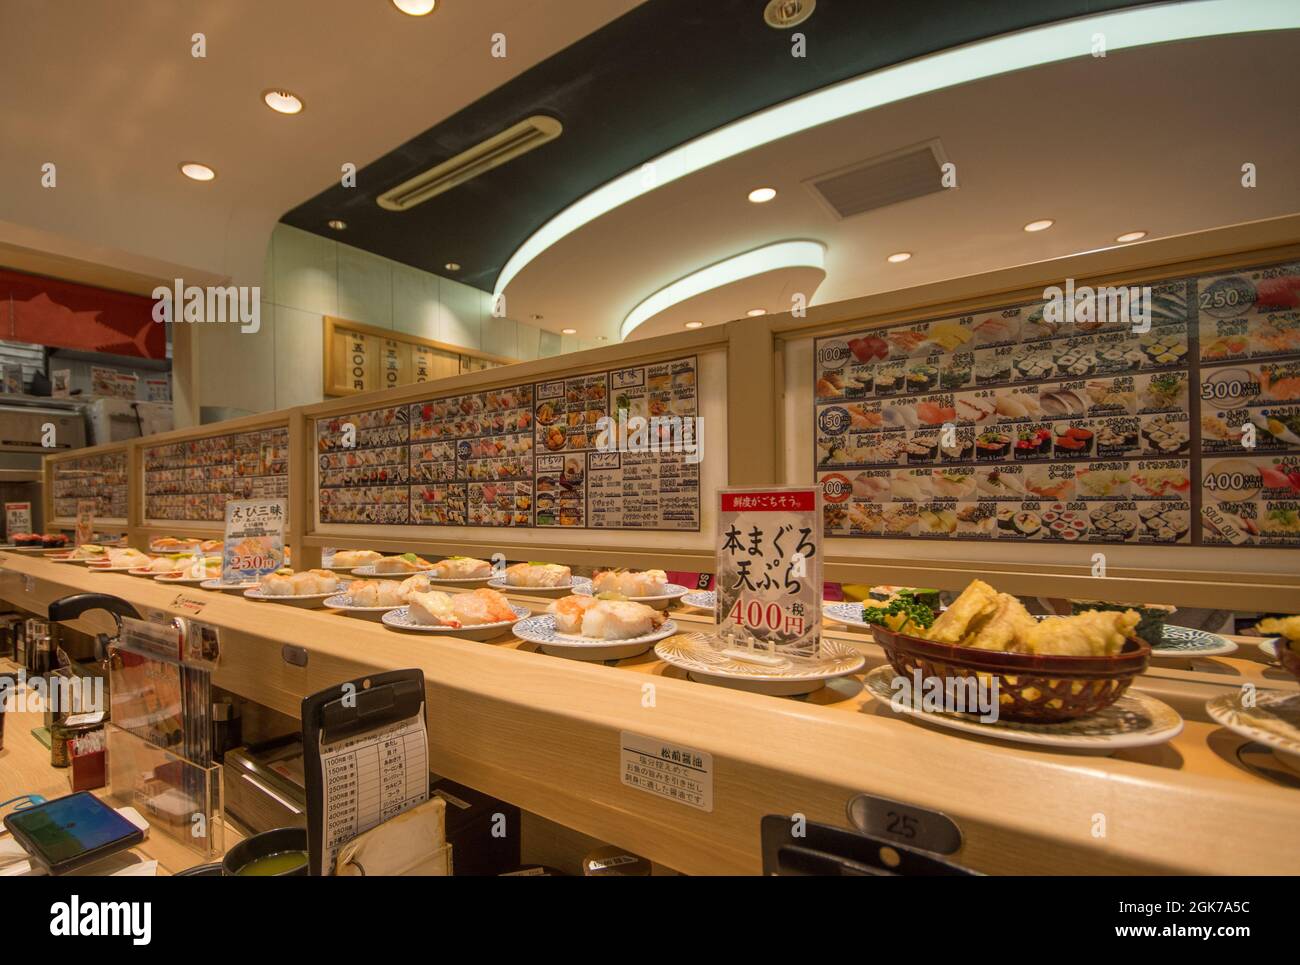 Sushi conveyor belt stocked with various types, Osaka, Japan Stock Photo